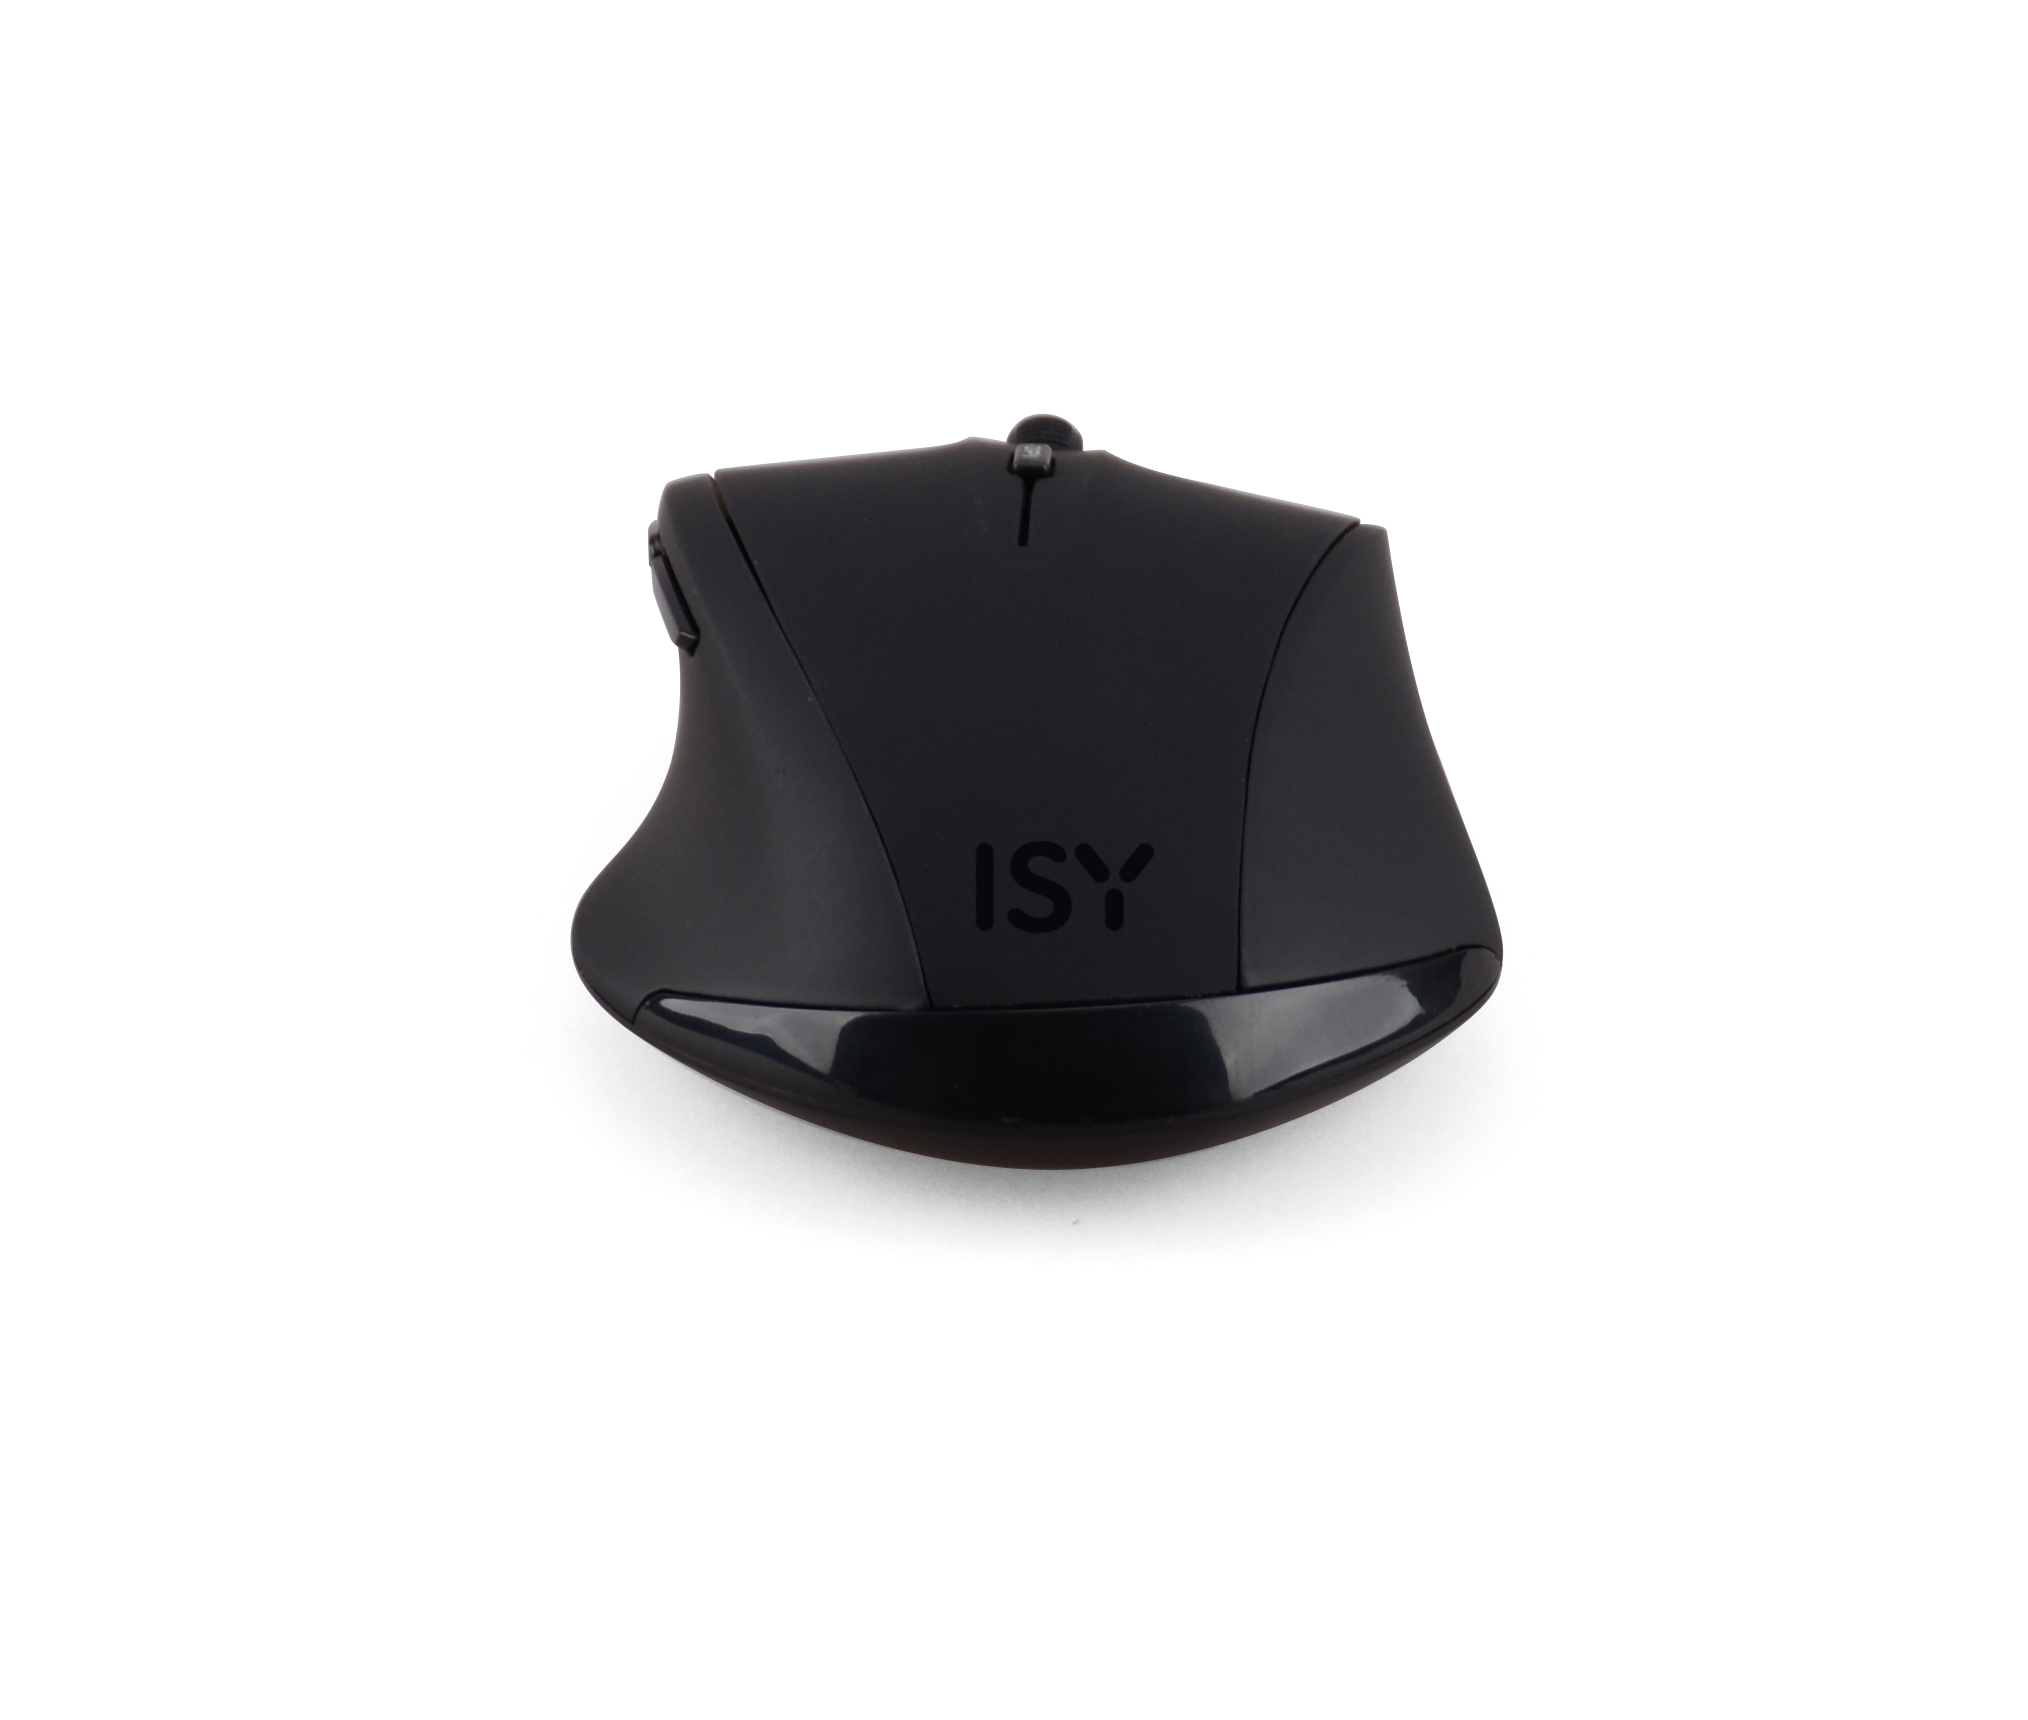 ISY Schwarz Maus, IWM-3100